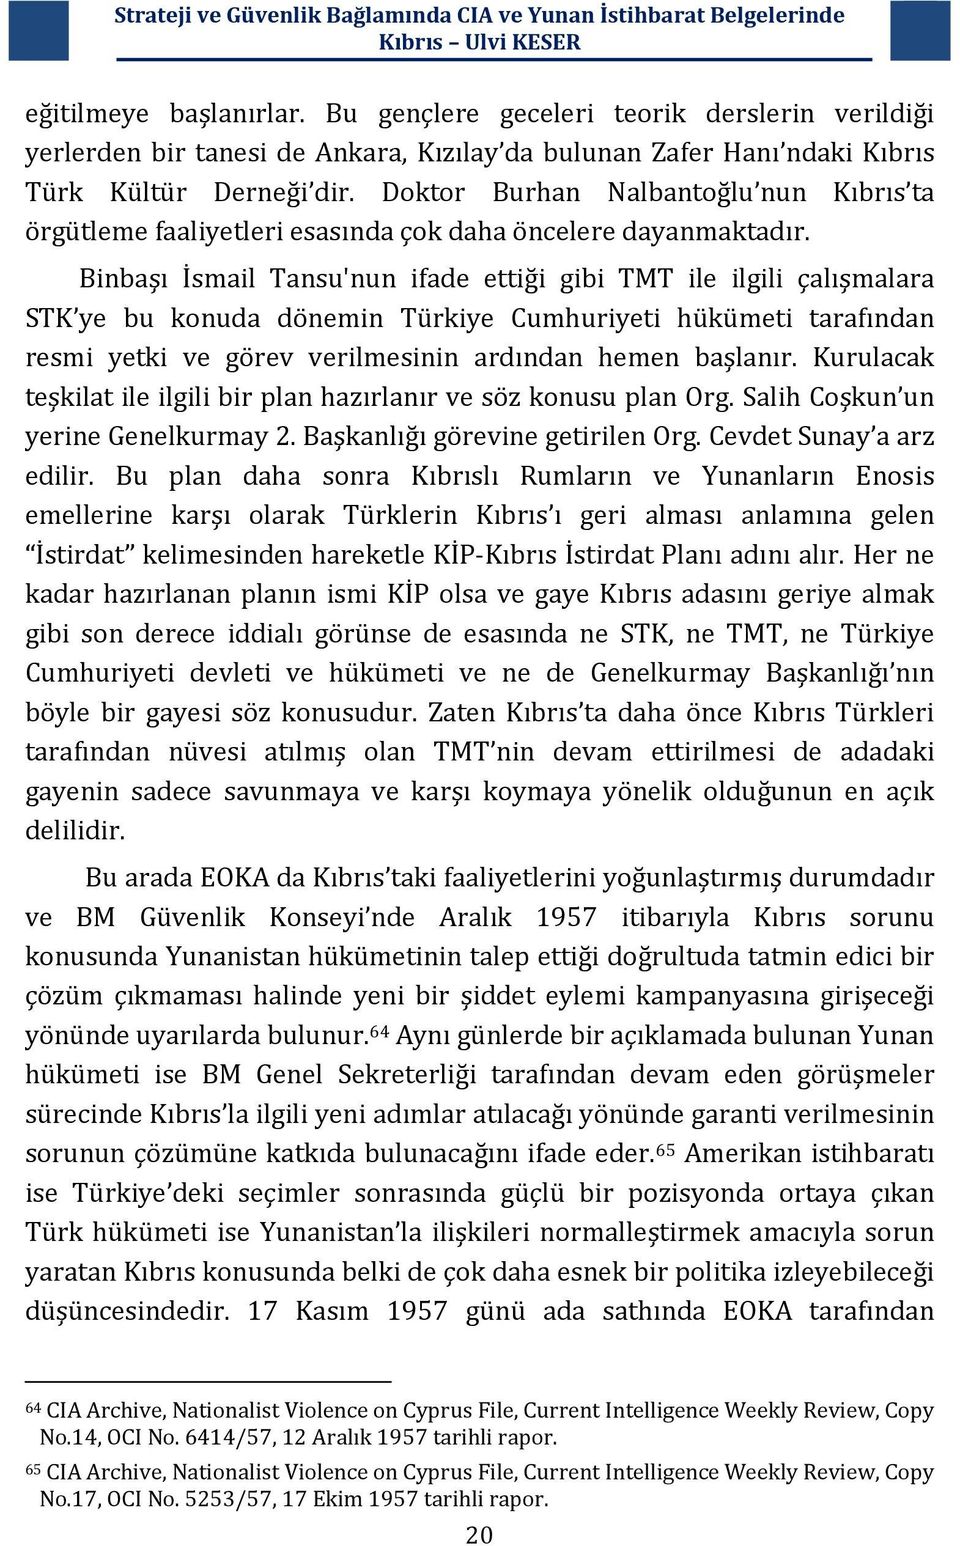 Binbaşı İsmail Tansu'nun ifade ettiği gibi TMT ile ilgili çalışmalara STK ye bu konuda dönemin Türkiye Cumhuriyeti hükümeti tarafından resmi yetki ve görev verilmesinin ardından hemen başlanır.